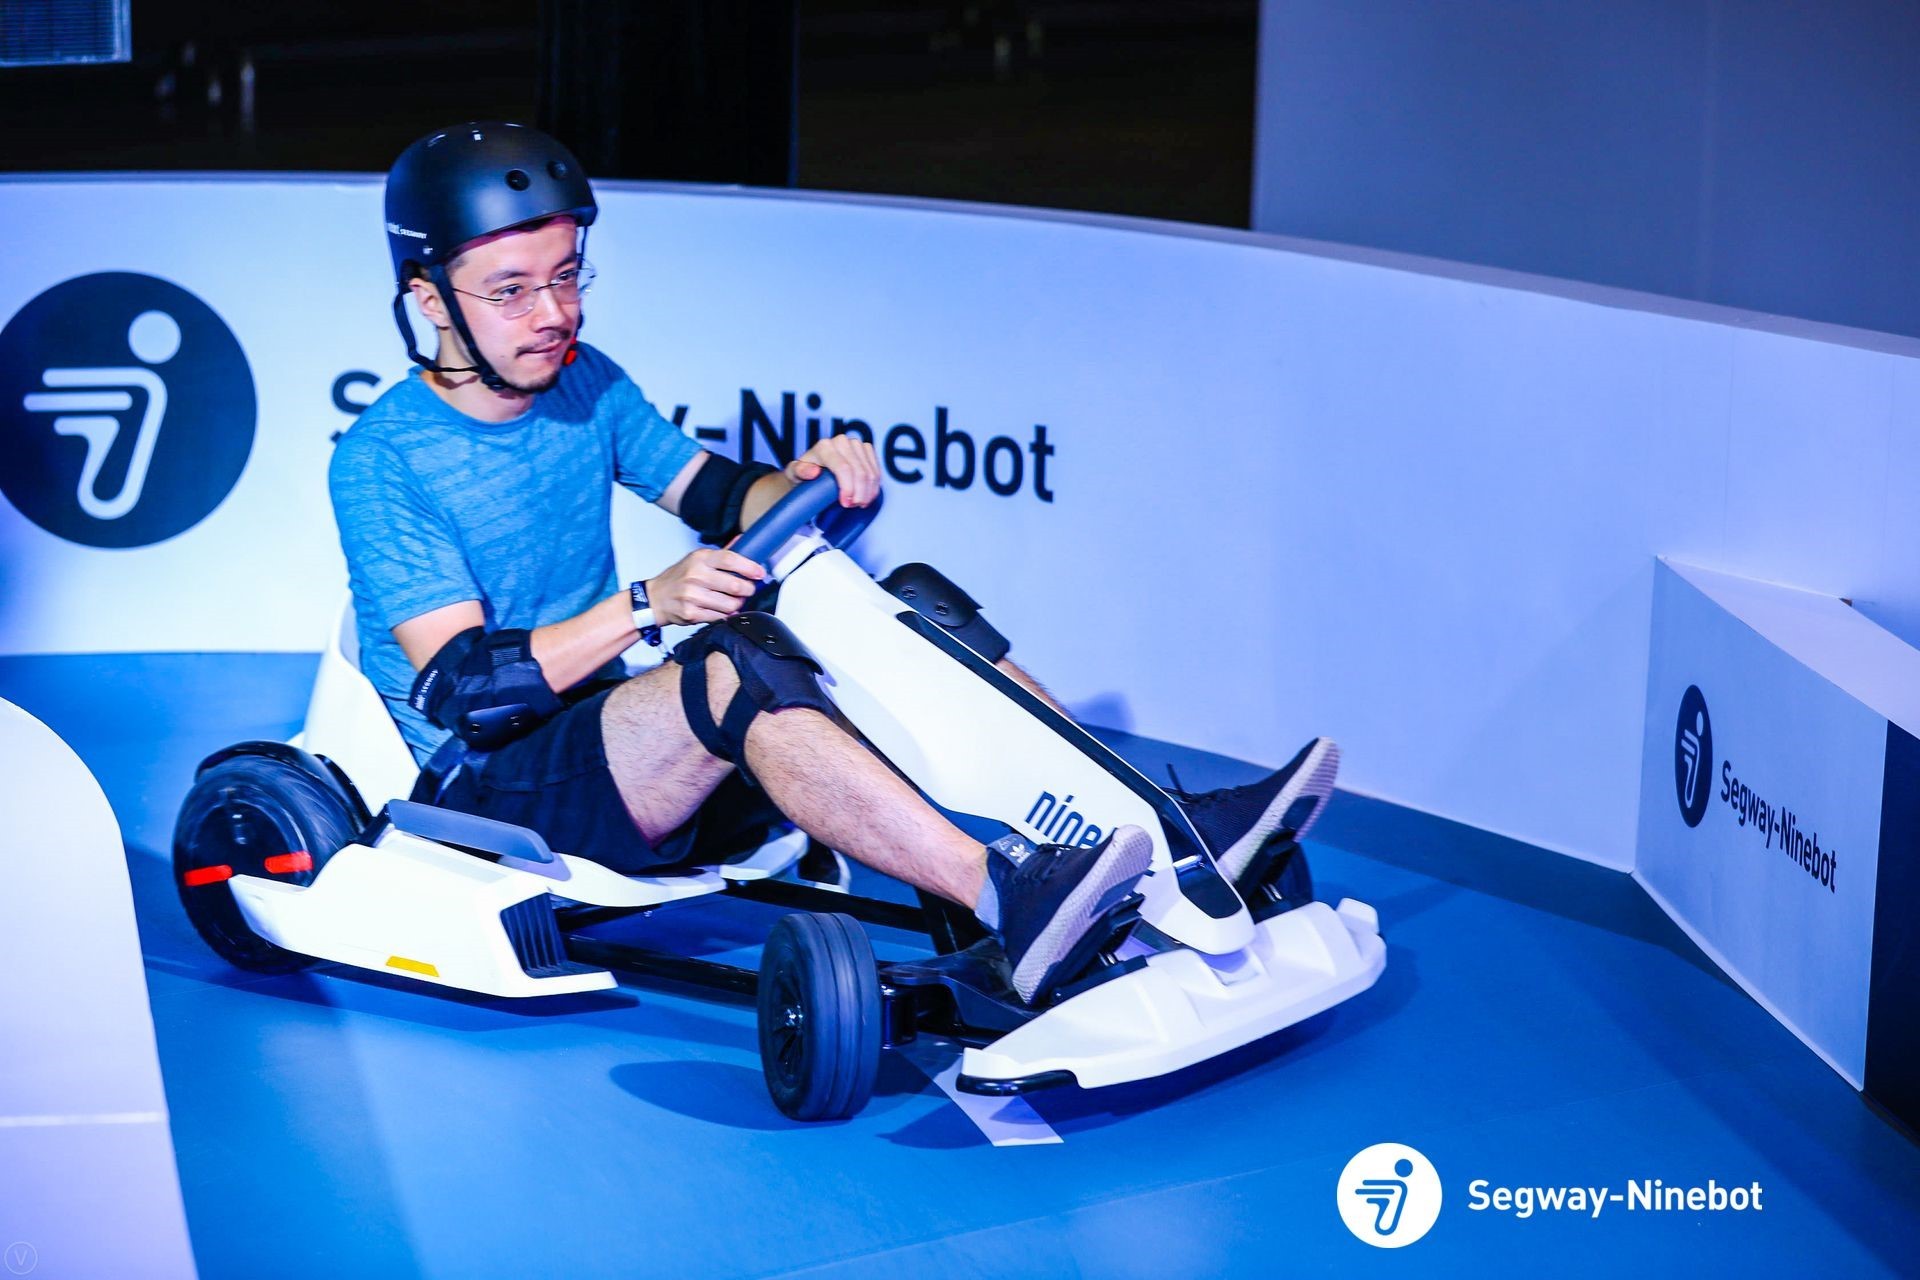 开启你的未来酷玩模式  头号玩家之Segway-Ninebot深圳超级新品日引爆盛夏激情